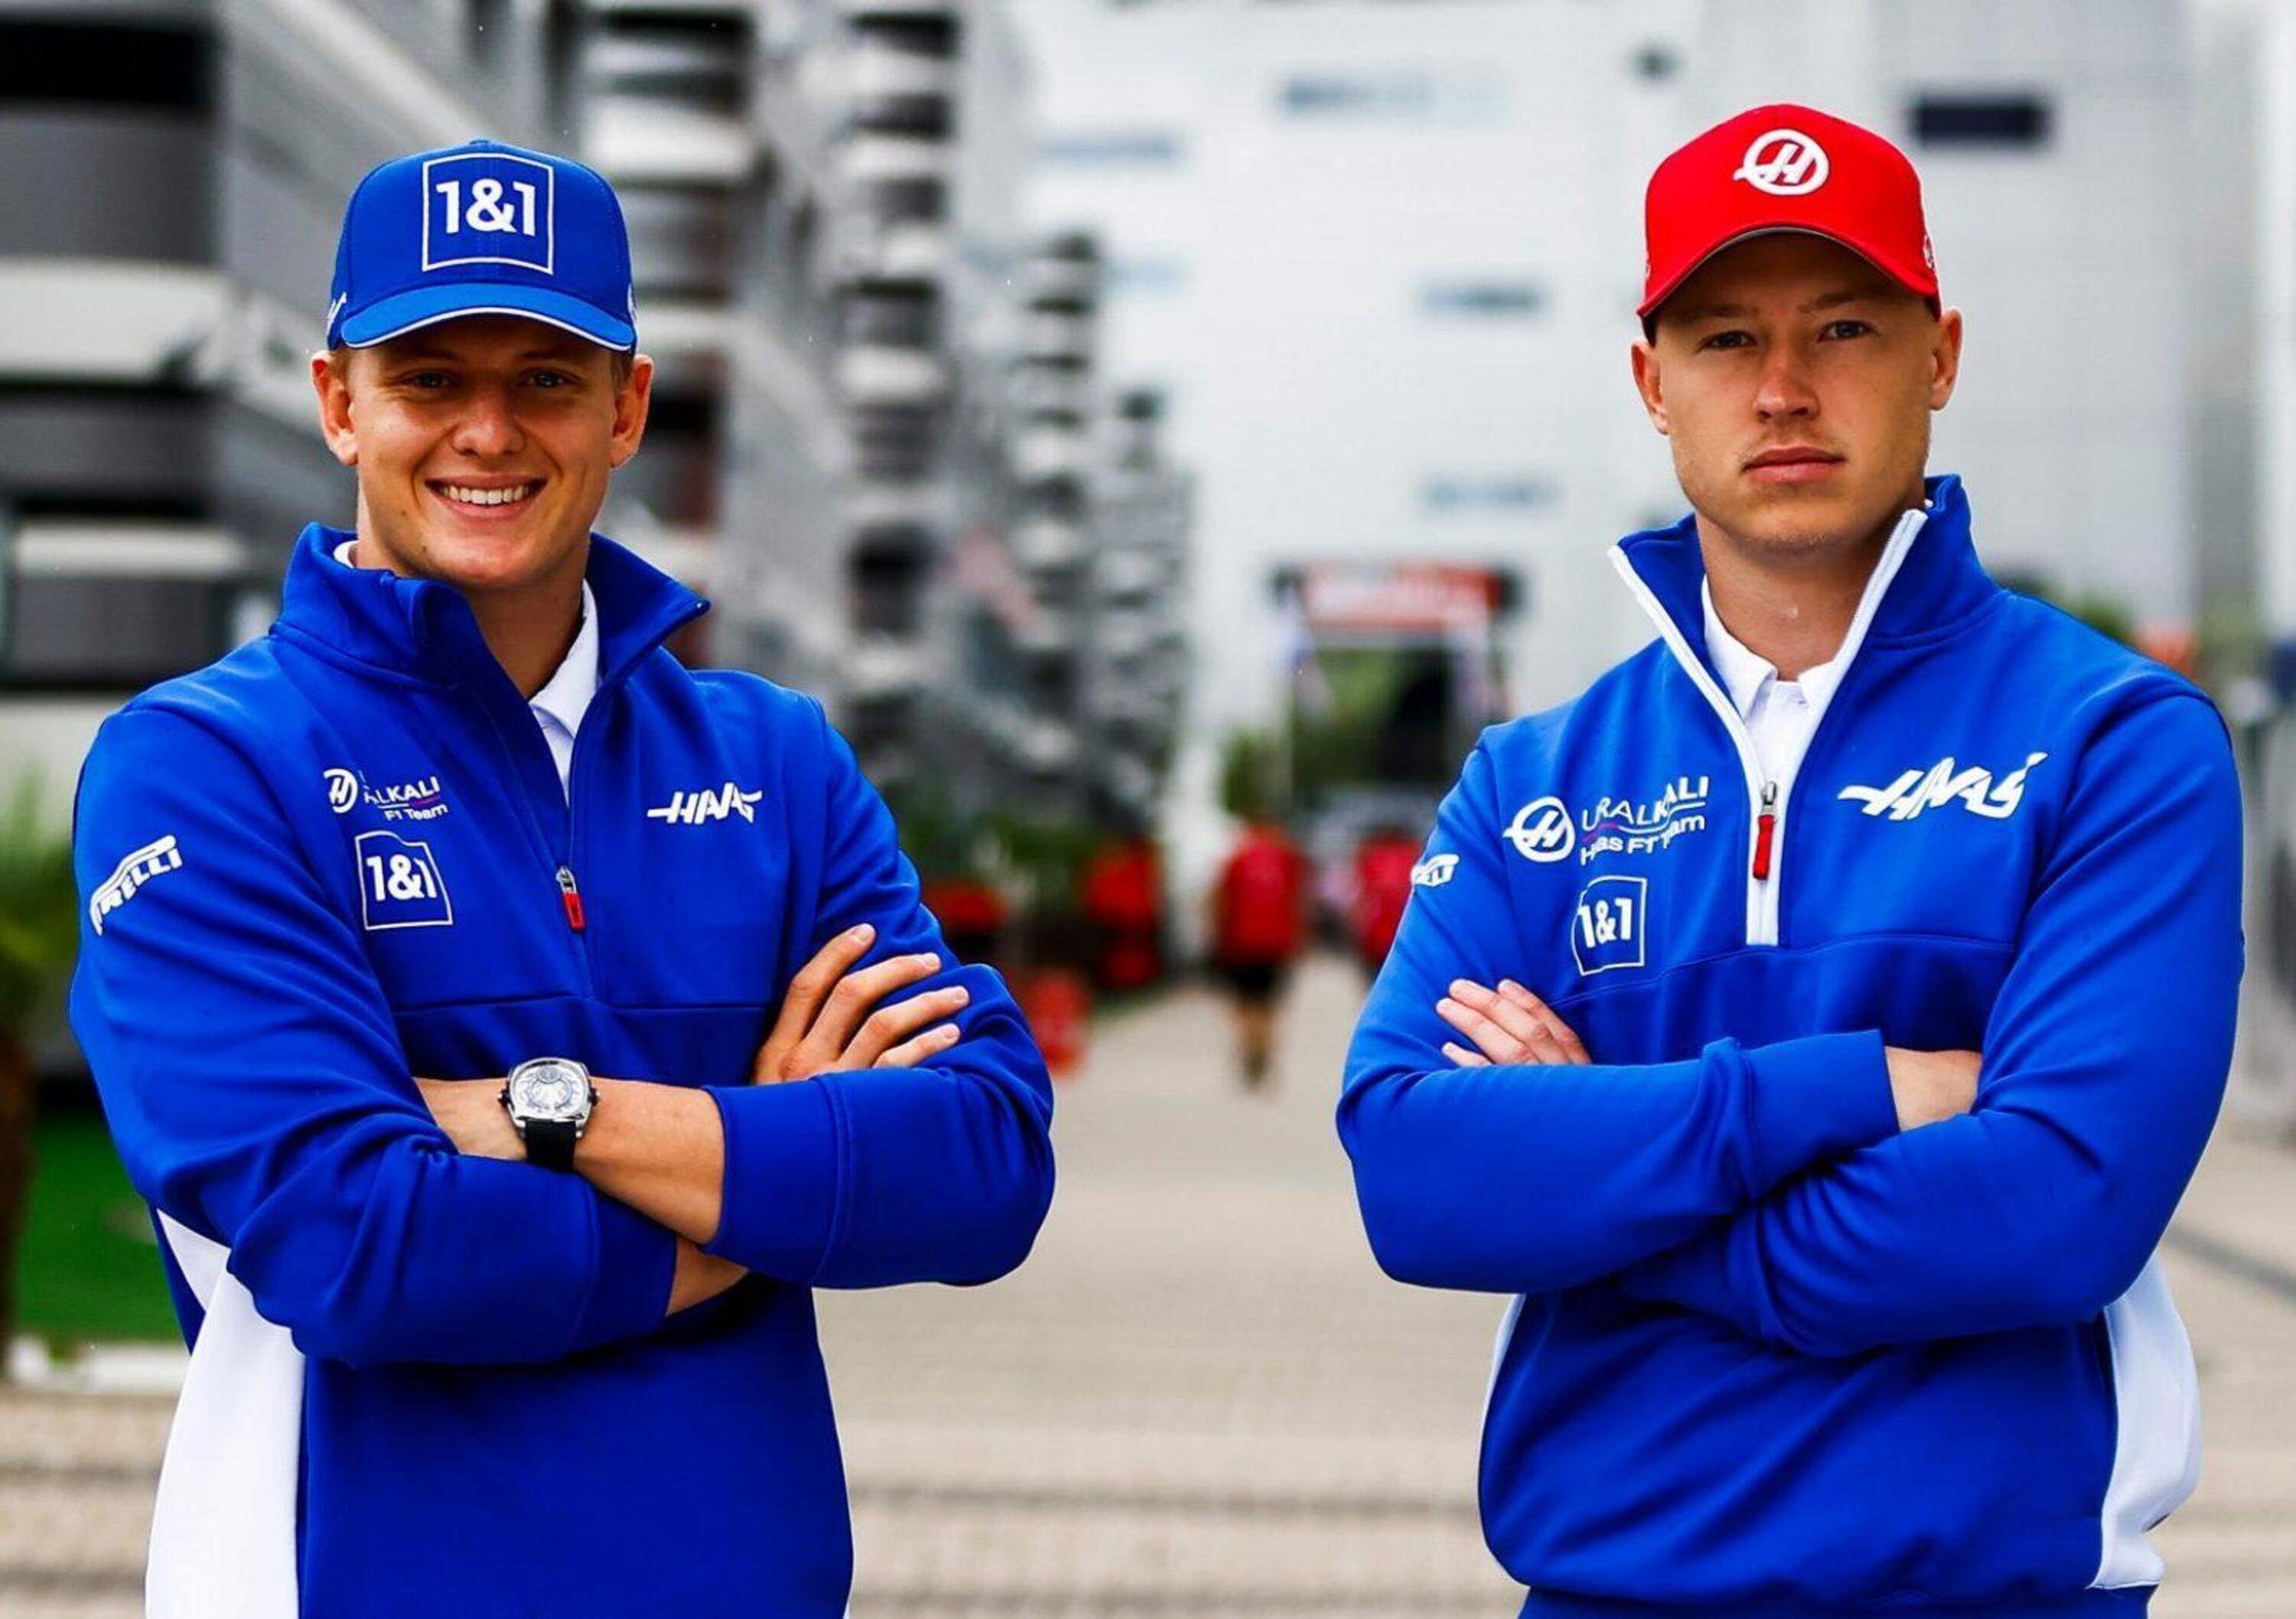 Formula 1: Haas, Schumacher e Mazepin confermati per il 2022